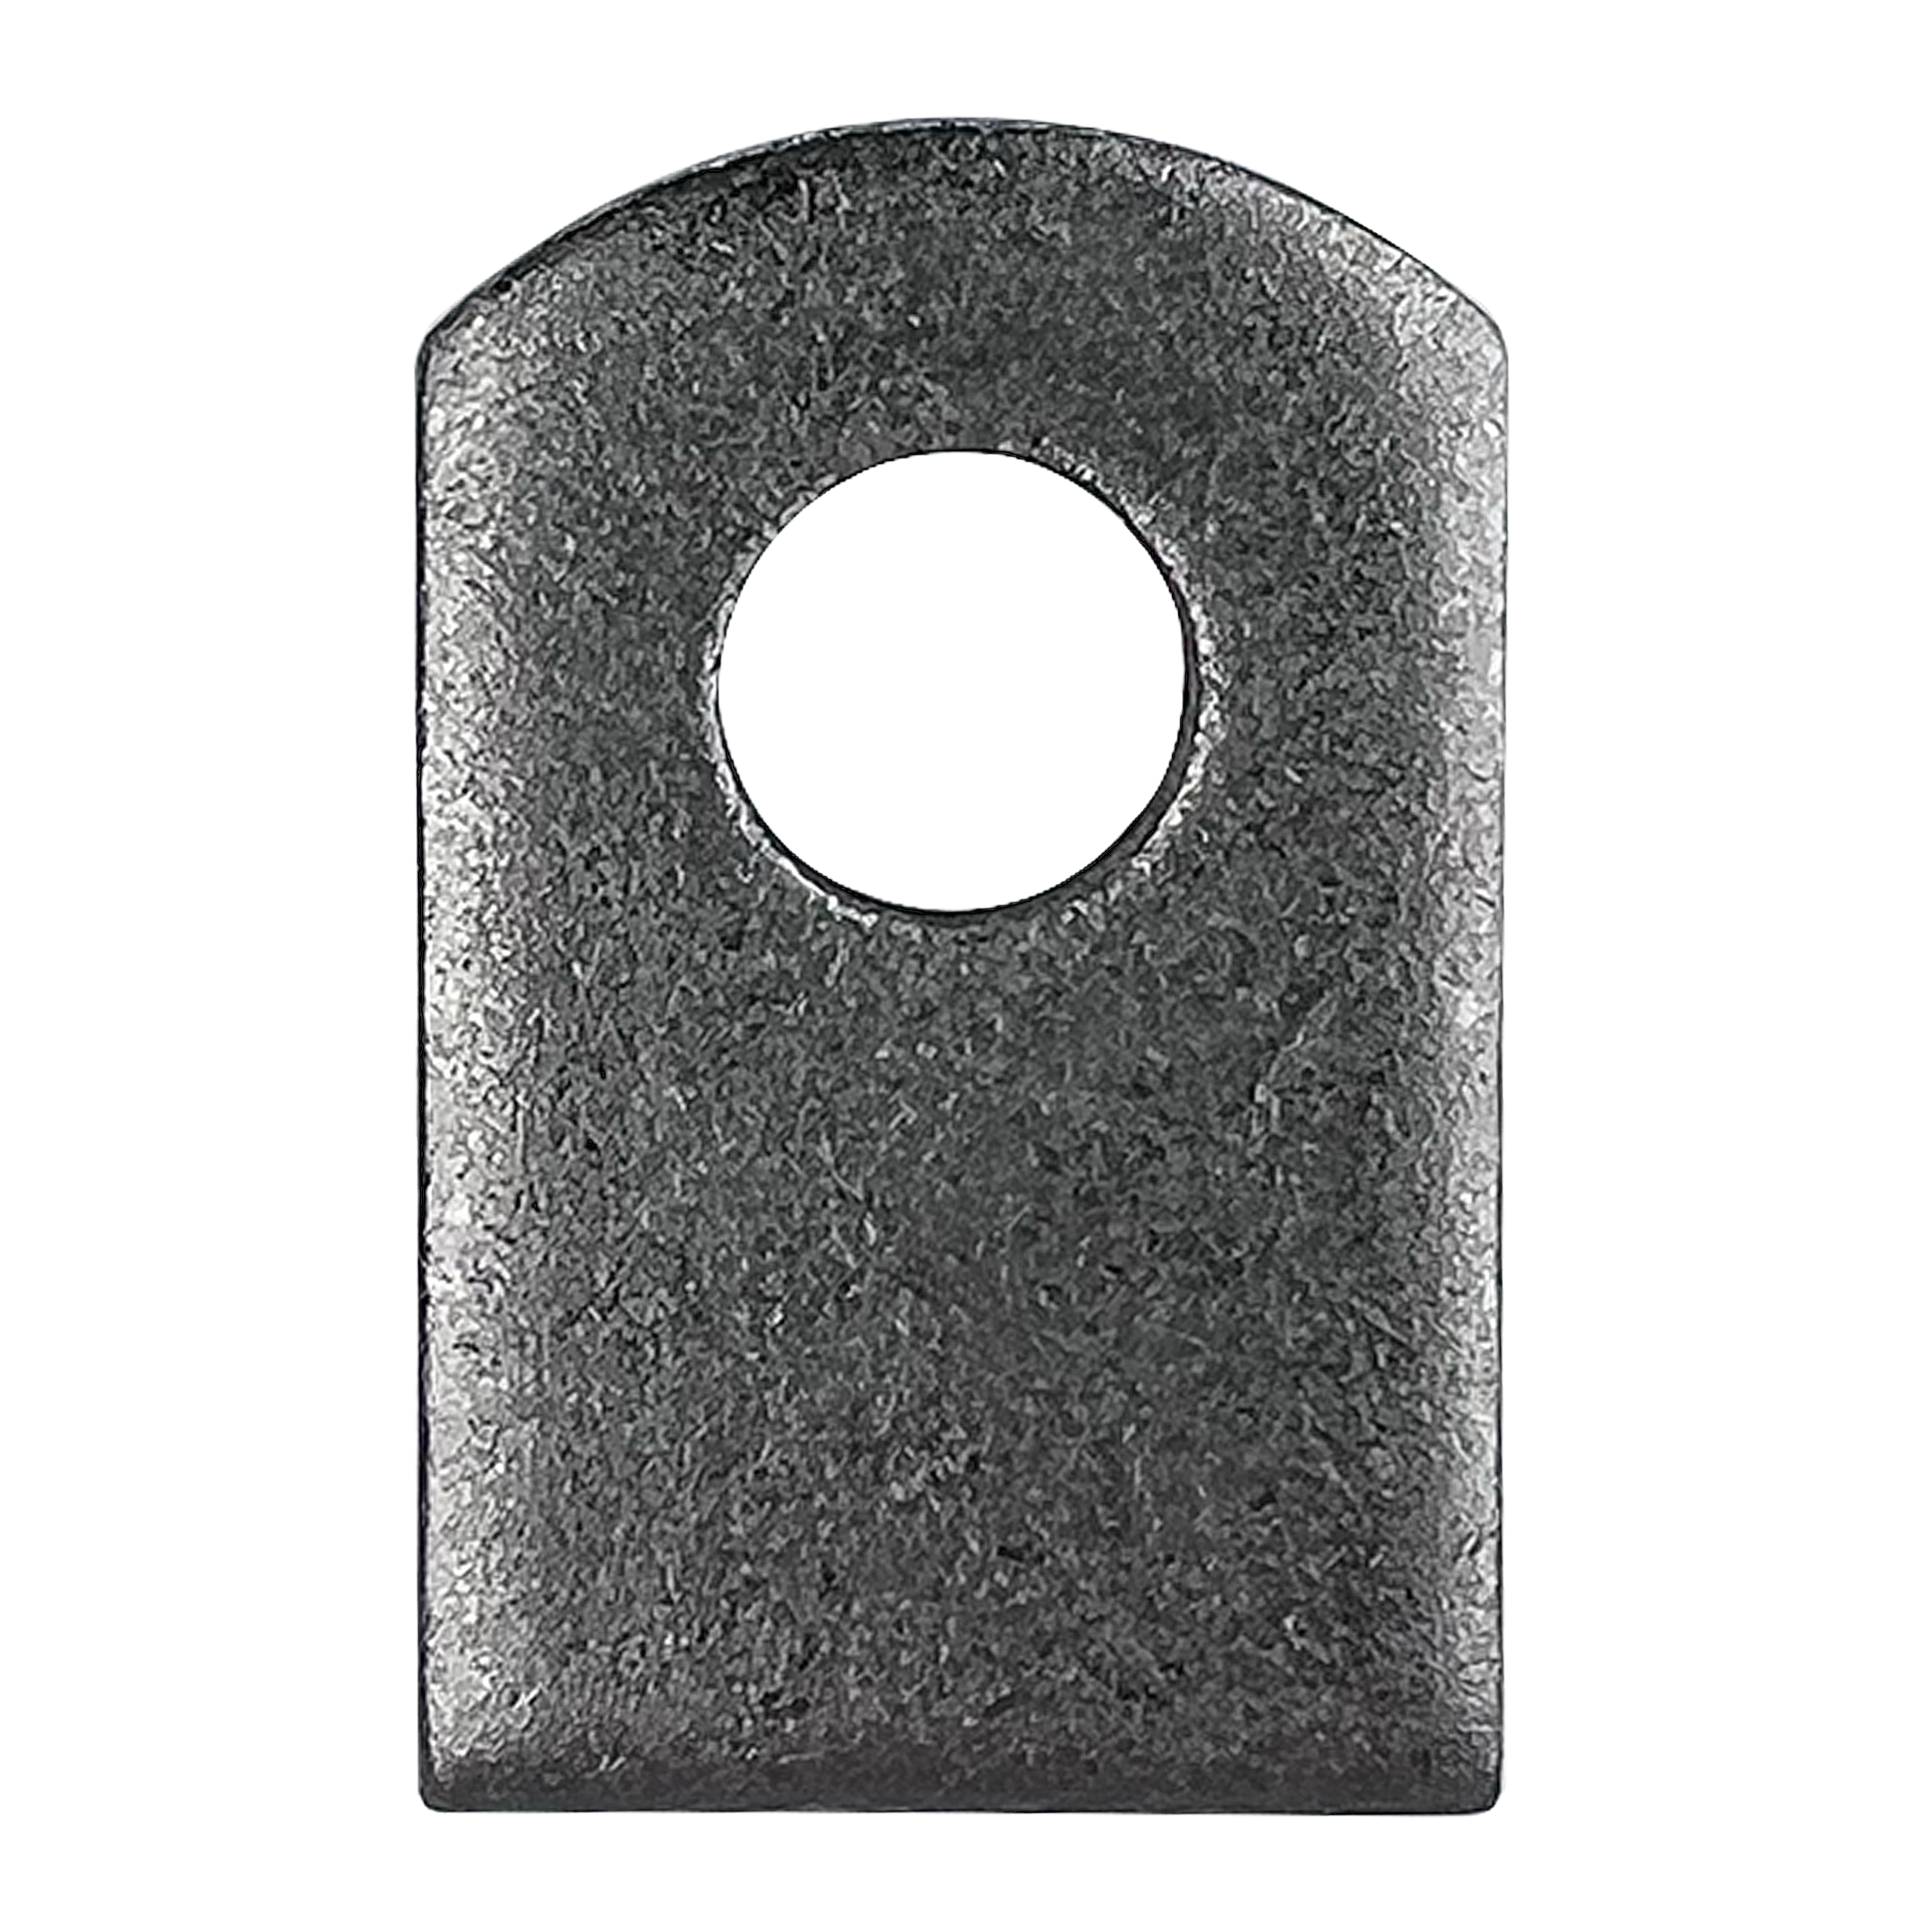 Welding Tabs Metal Weld On Steel Tab 1" x 1-1/2" x 1/8" 3.5mm - Heavy Duty